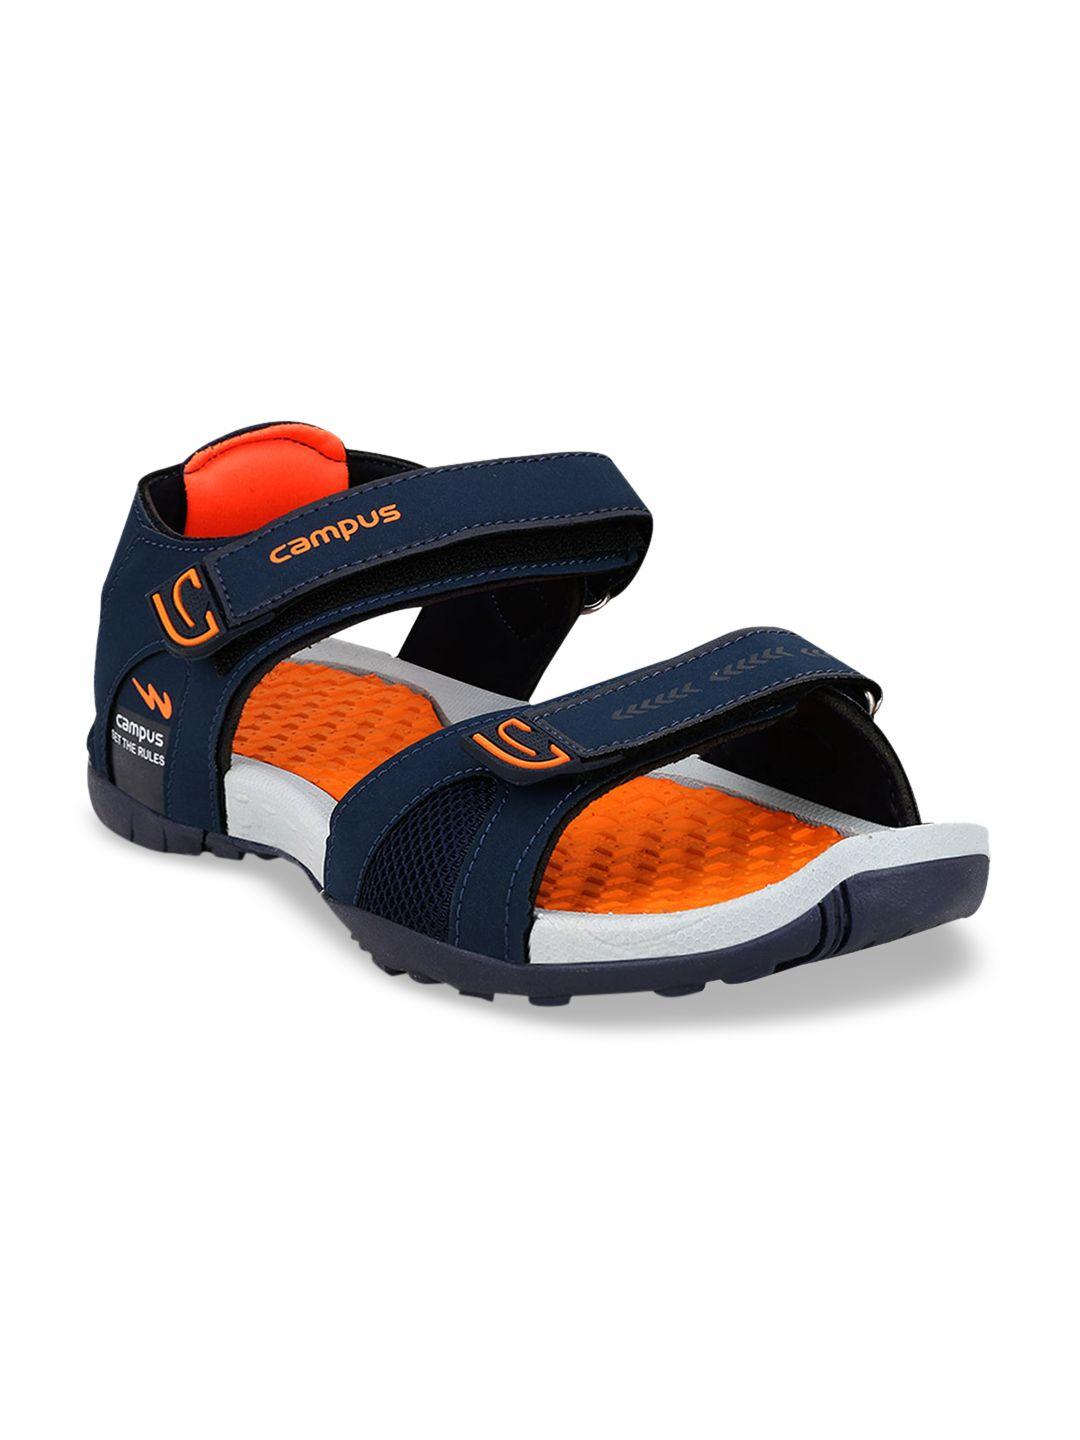 Campus Men Navy Blue & Orange Sports Sandals